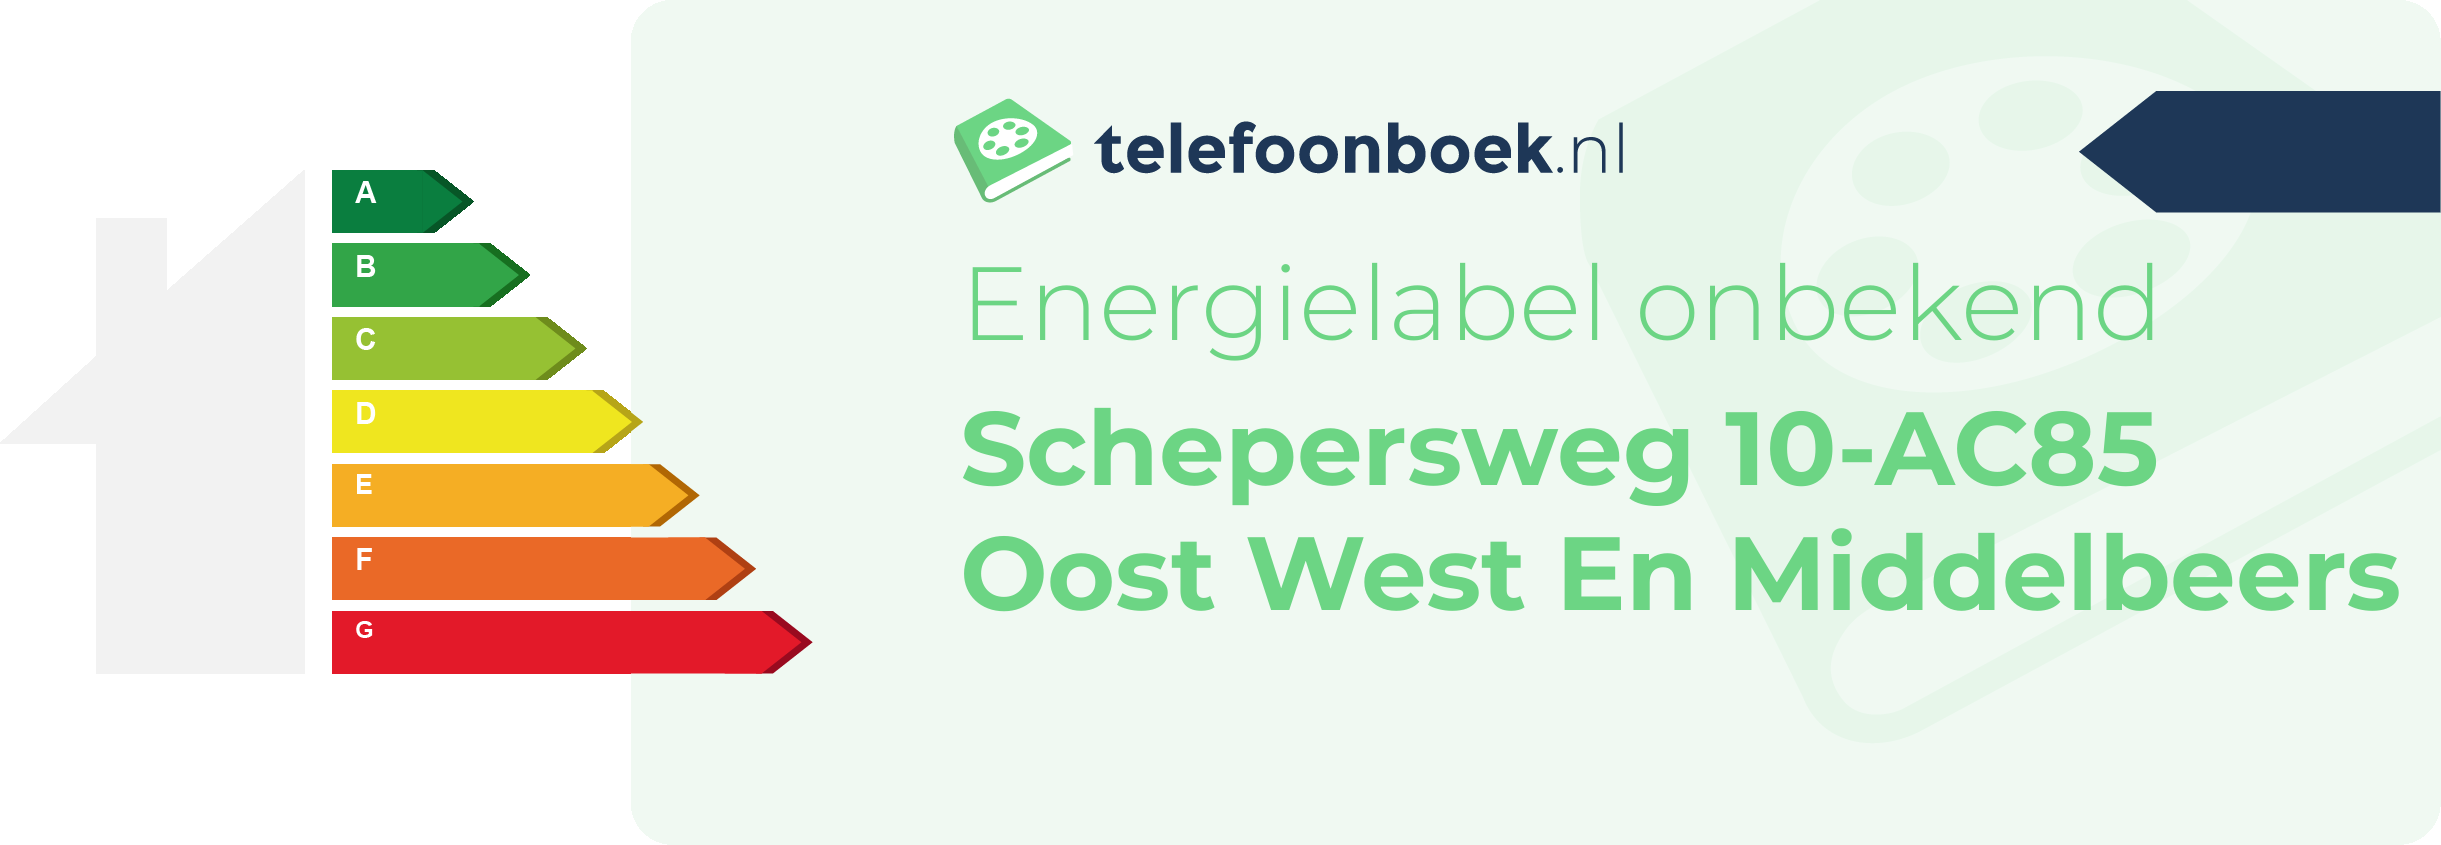 Energielabel Schepersweg 10-AC85 Oost West En Middelbeers